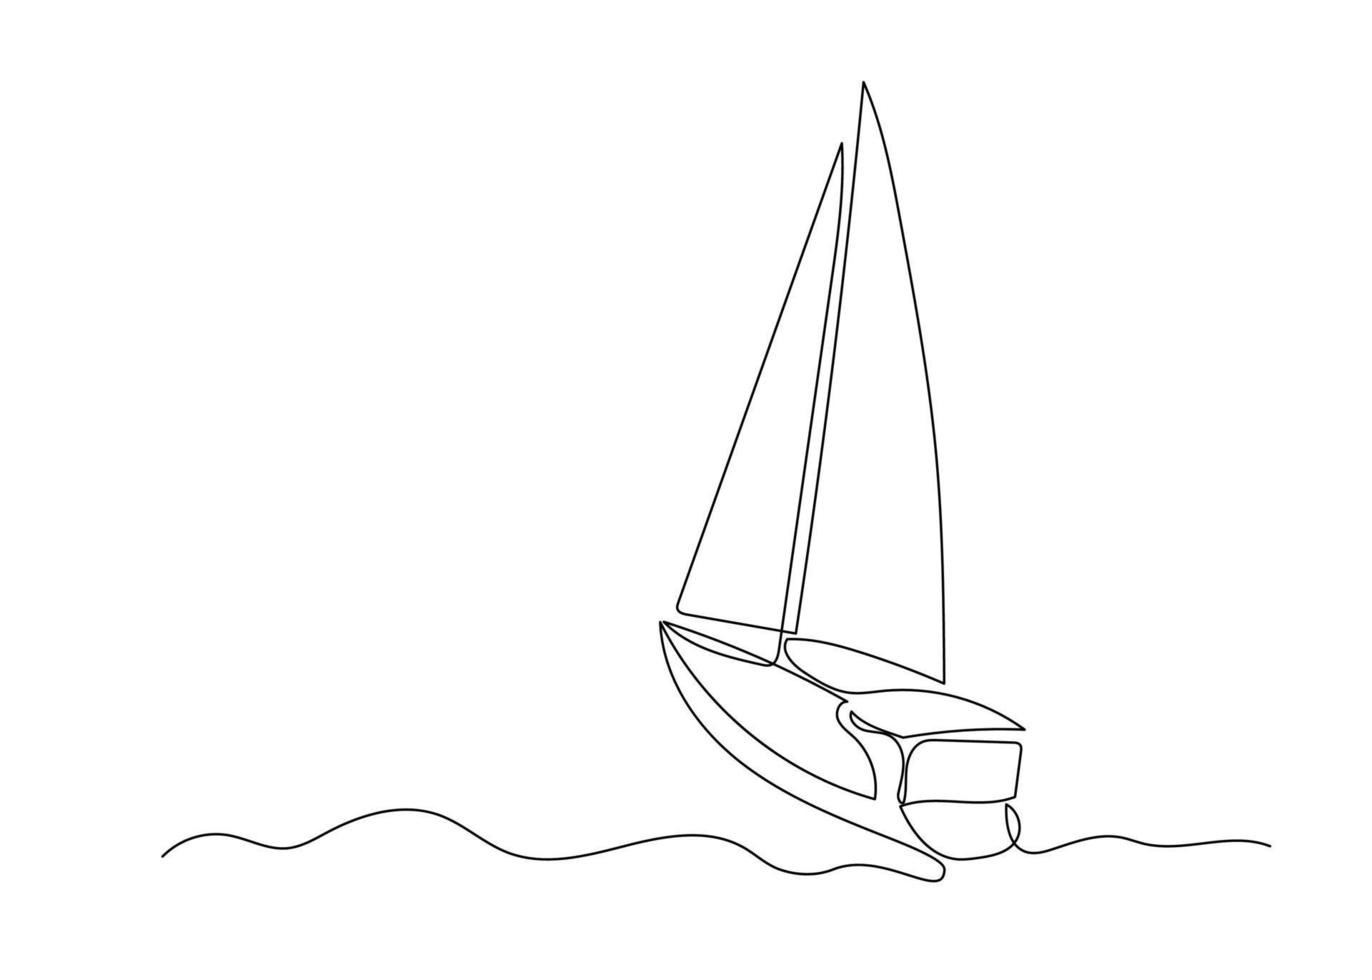 desenho de linha contínua de um veleiro no mar. arte do minimalismo. vetor